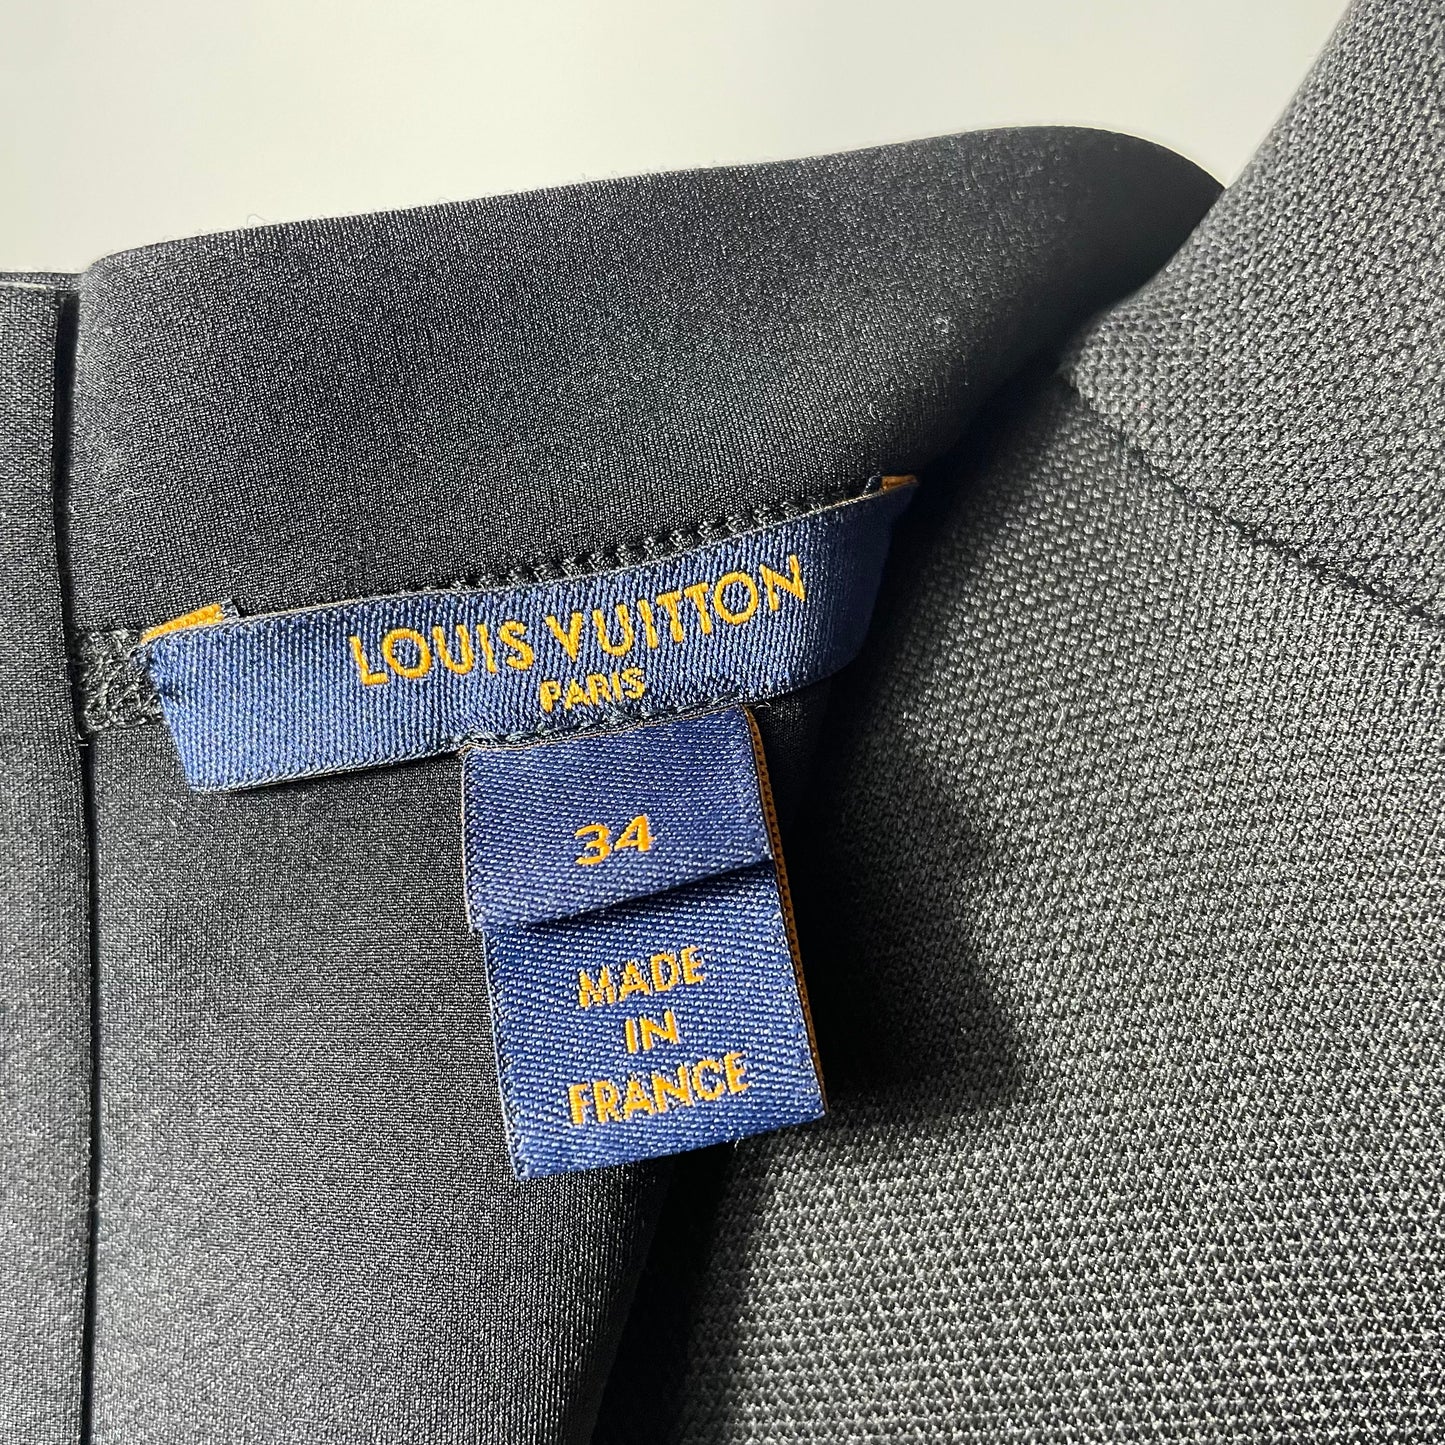 Louis Vuitton Short Sleeved Fitted Dress EU 34 / XS / UK 6